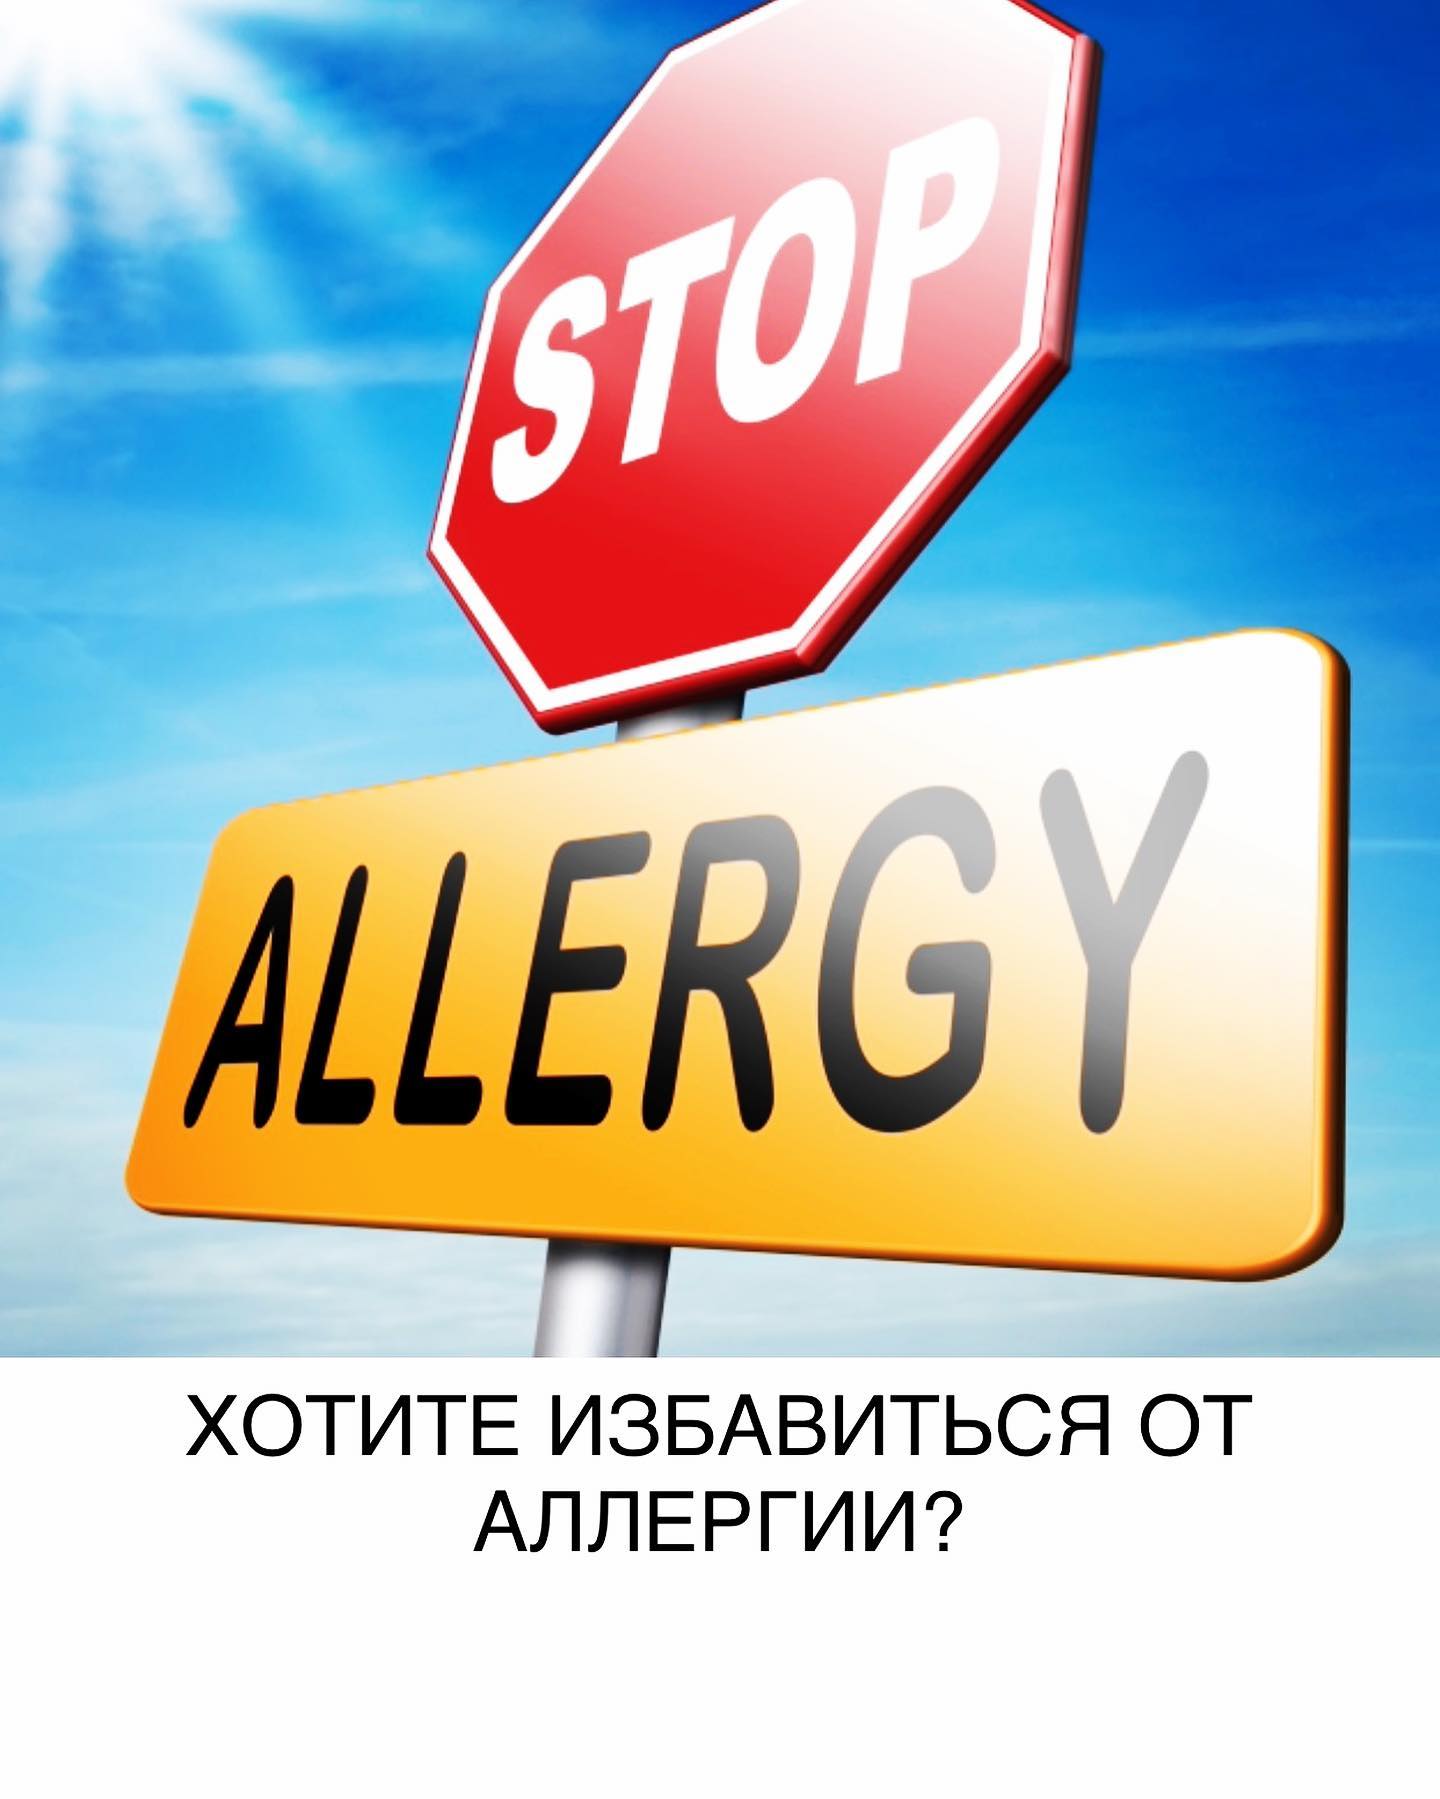 Можно ли избавиться от аллергии раз и навсегда